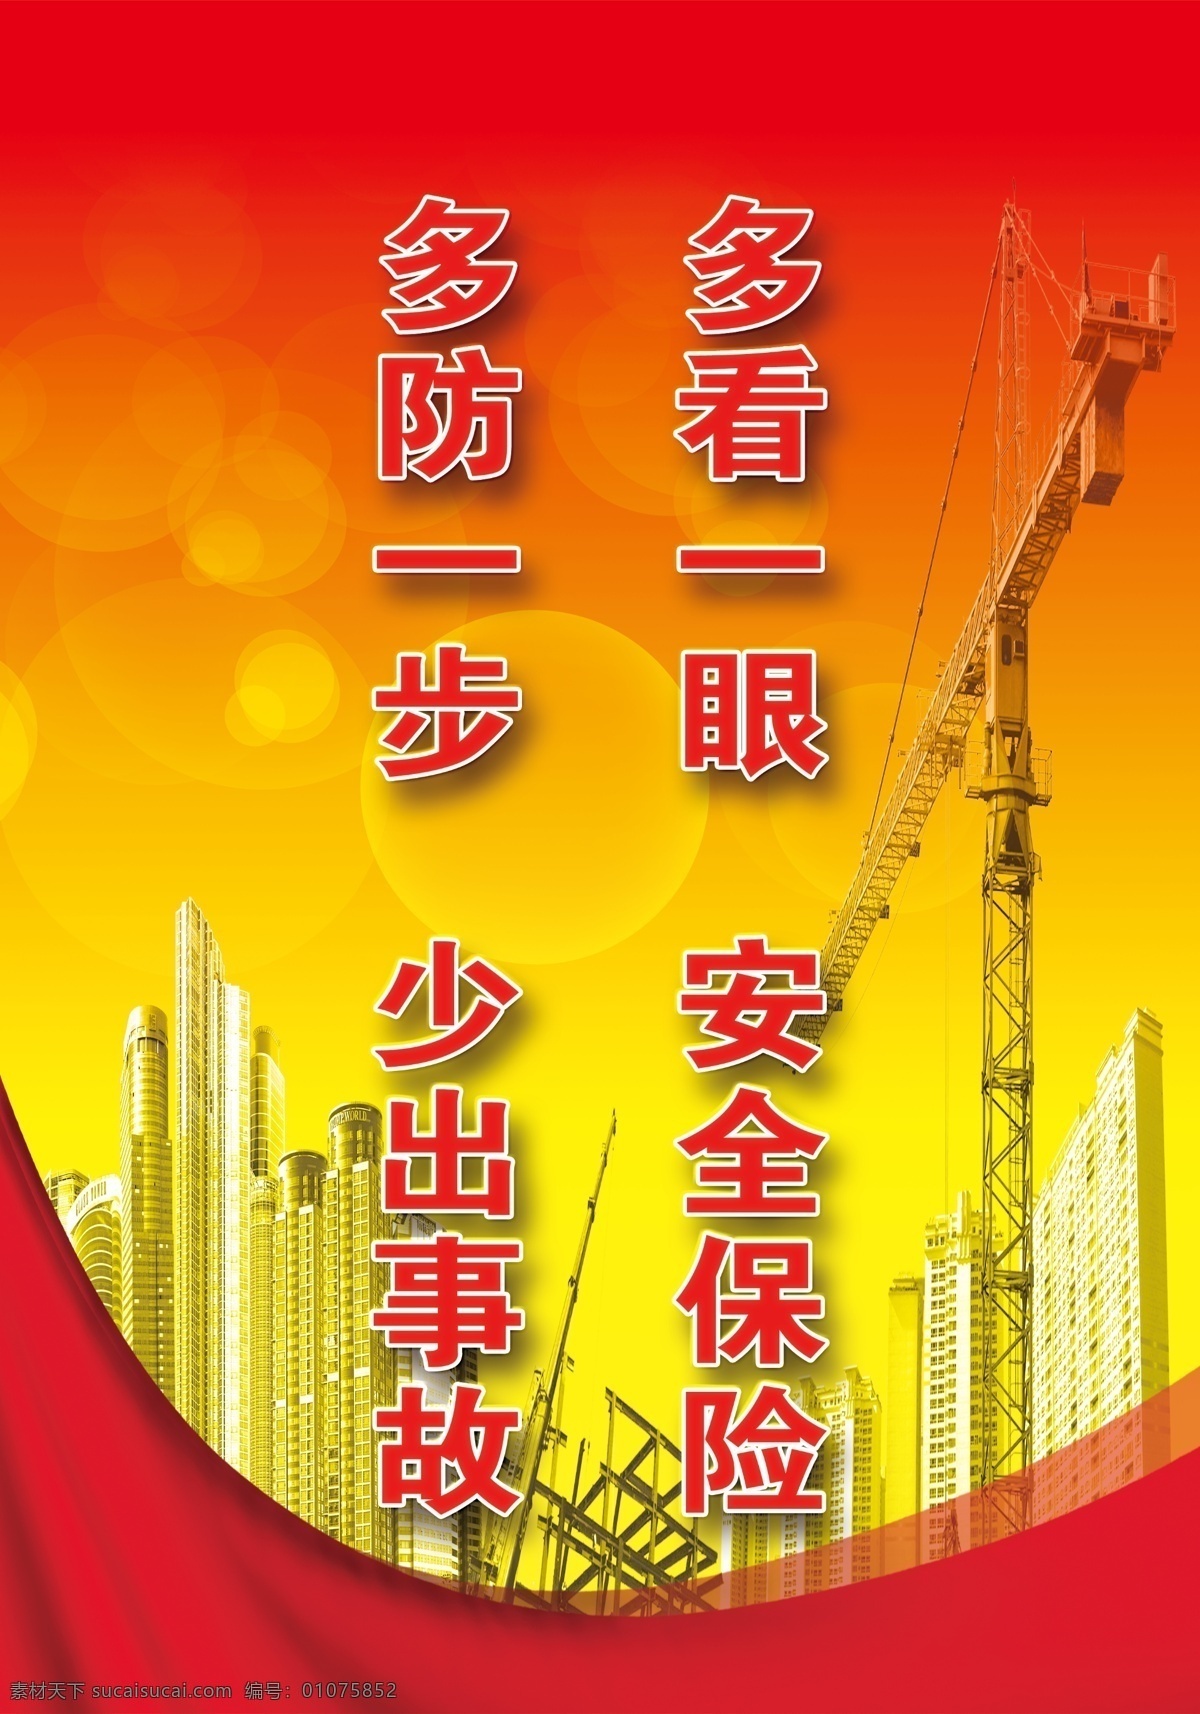 多看一眼 安全保险 多防一上海 安全标语 警示标语 红黄背景 高楼 铁塔 泡泡